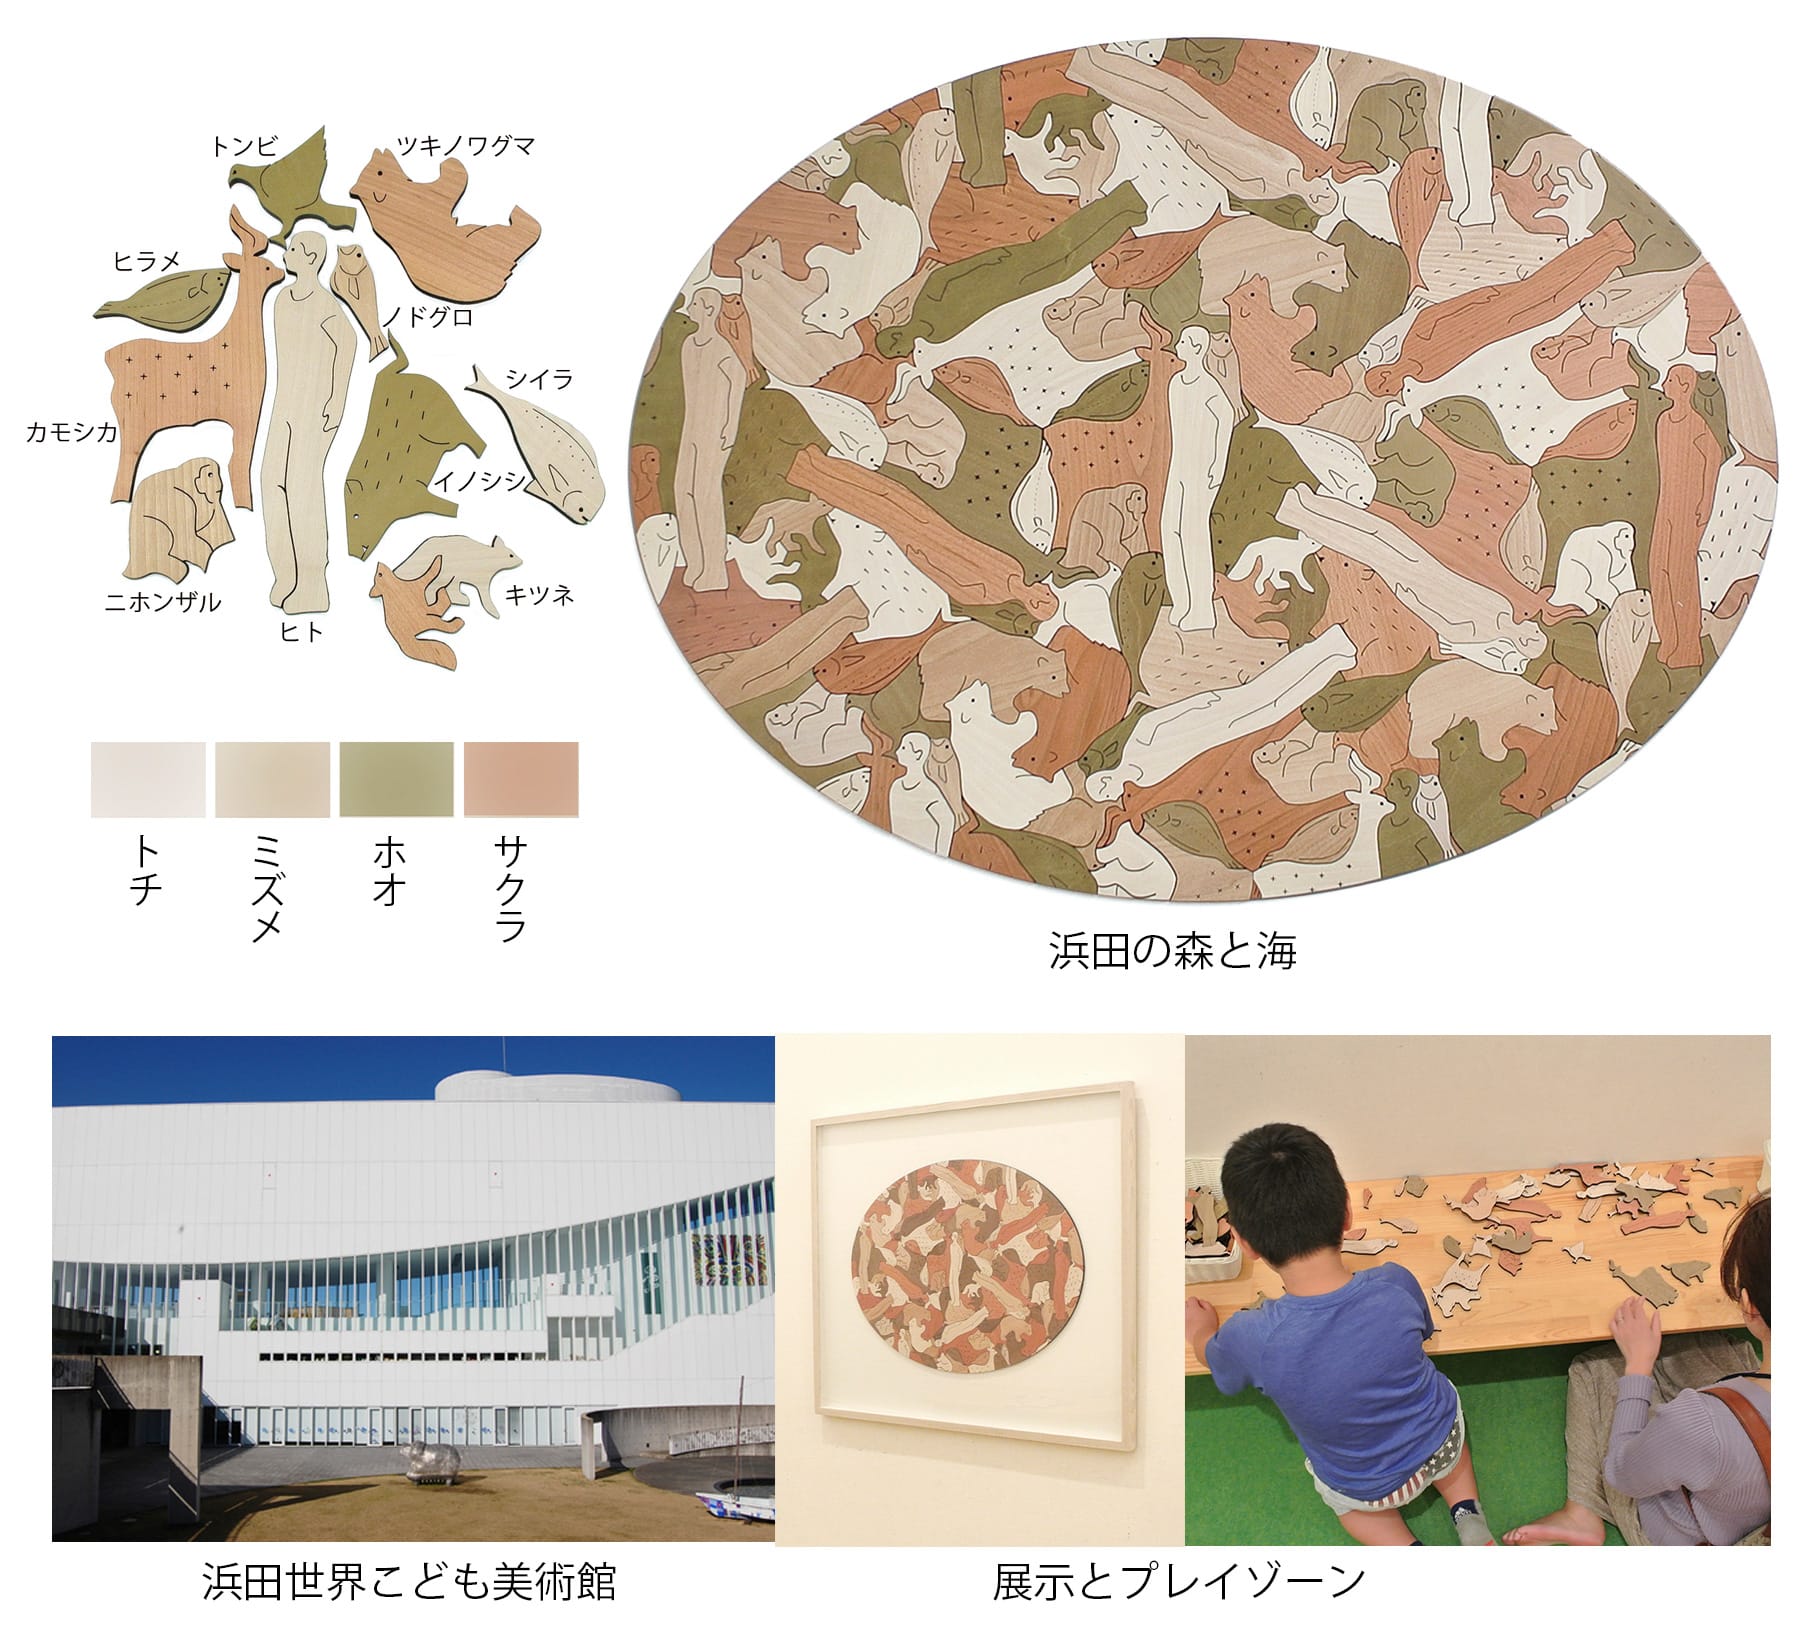 2019年 浜田市世界こども美術館『木のアート展』